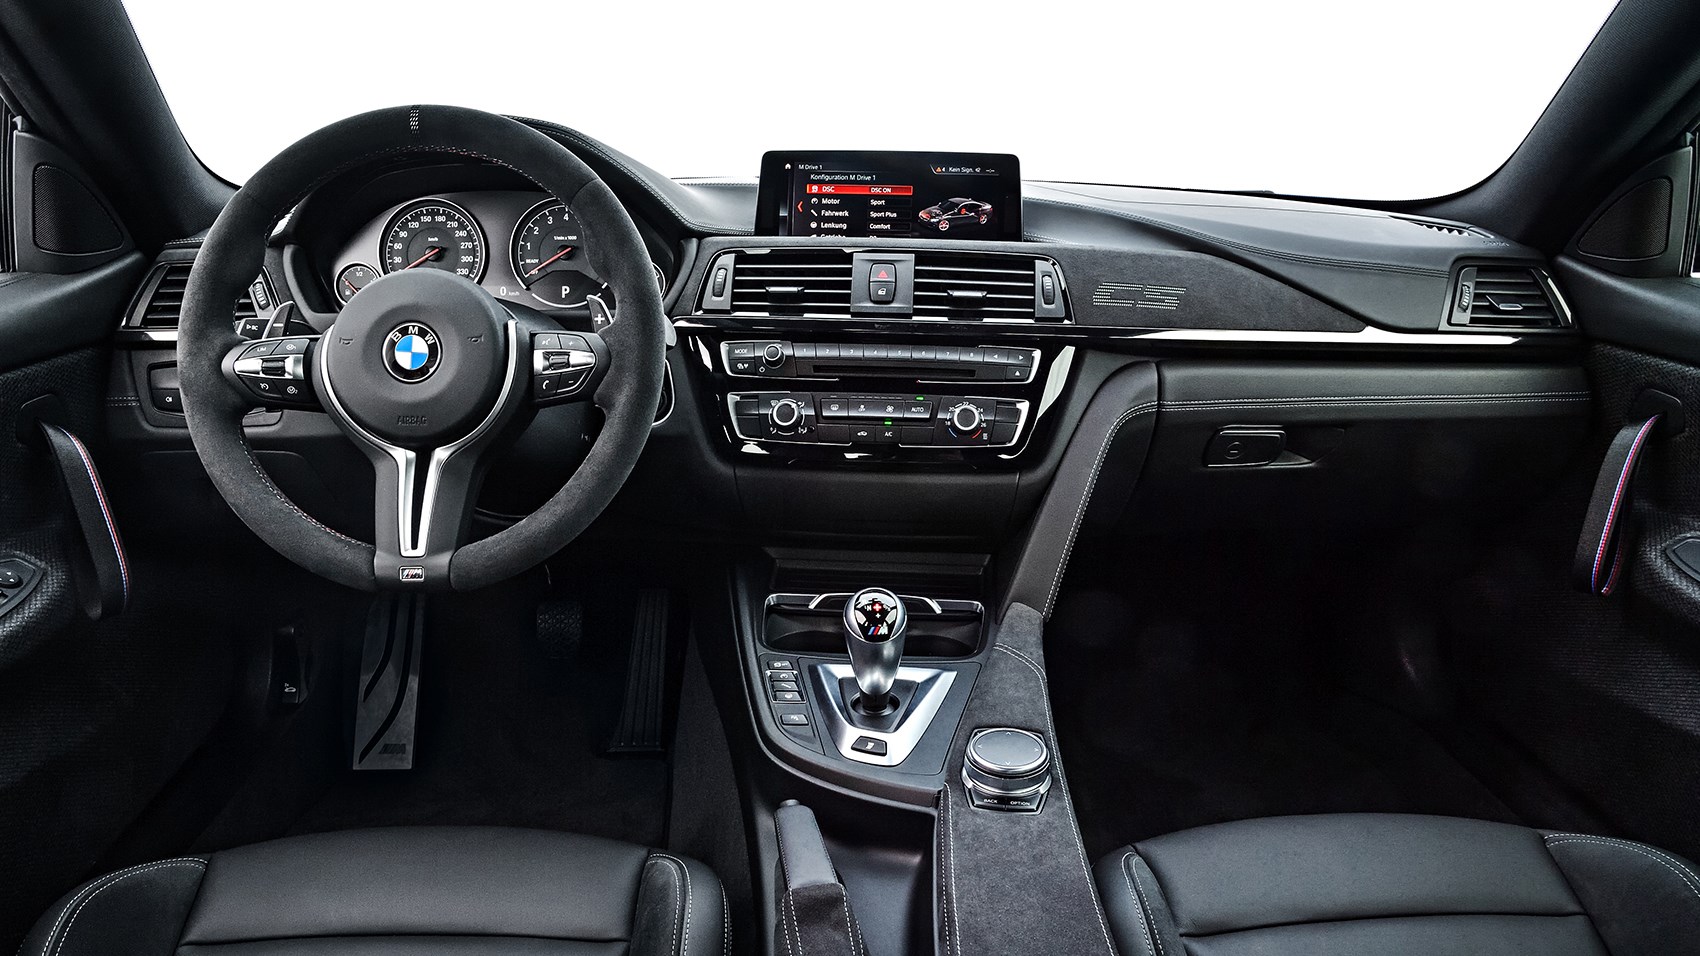 BMW M4 CS interior